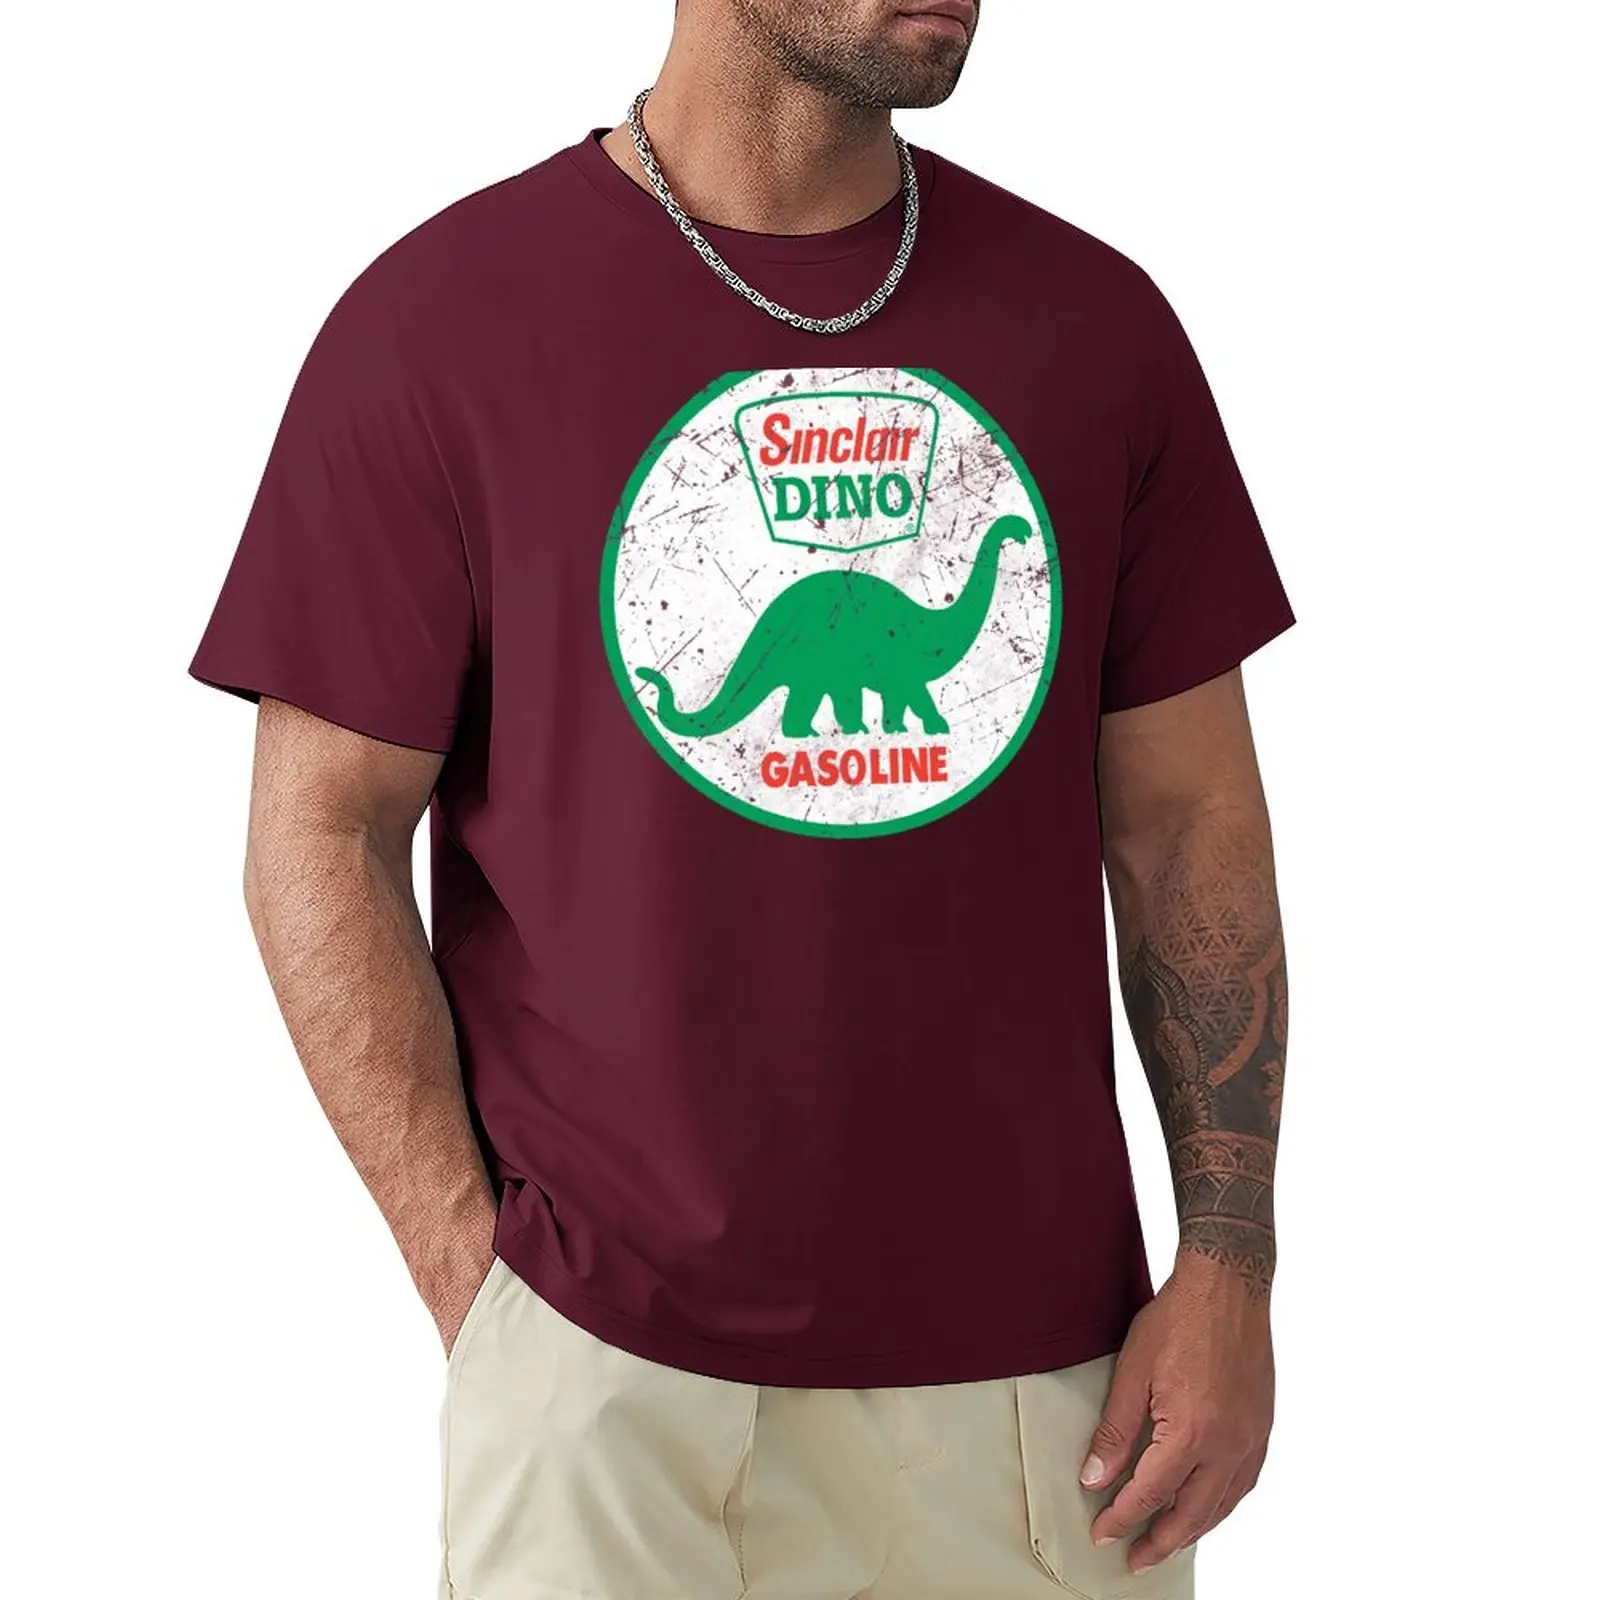 Sinclair Benzinli Dino T-Shirt komik t shirt T-shirt bir erkek kedi gömlek erkek pamuklu t shirt